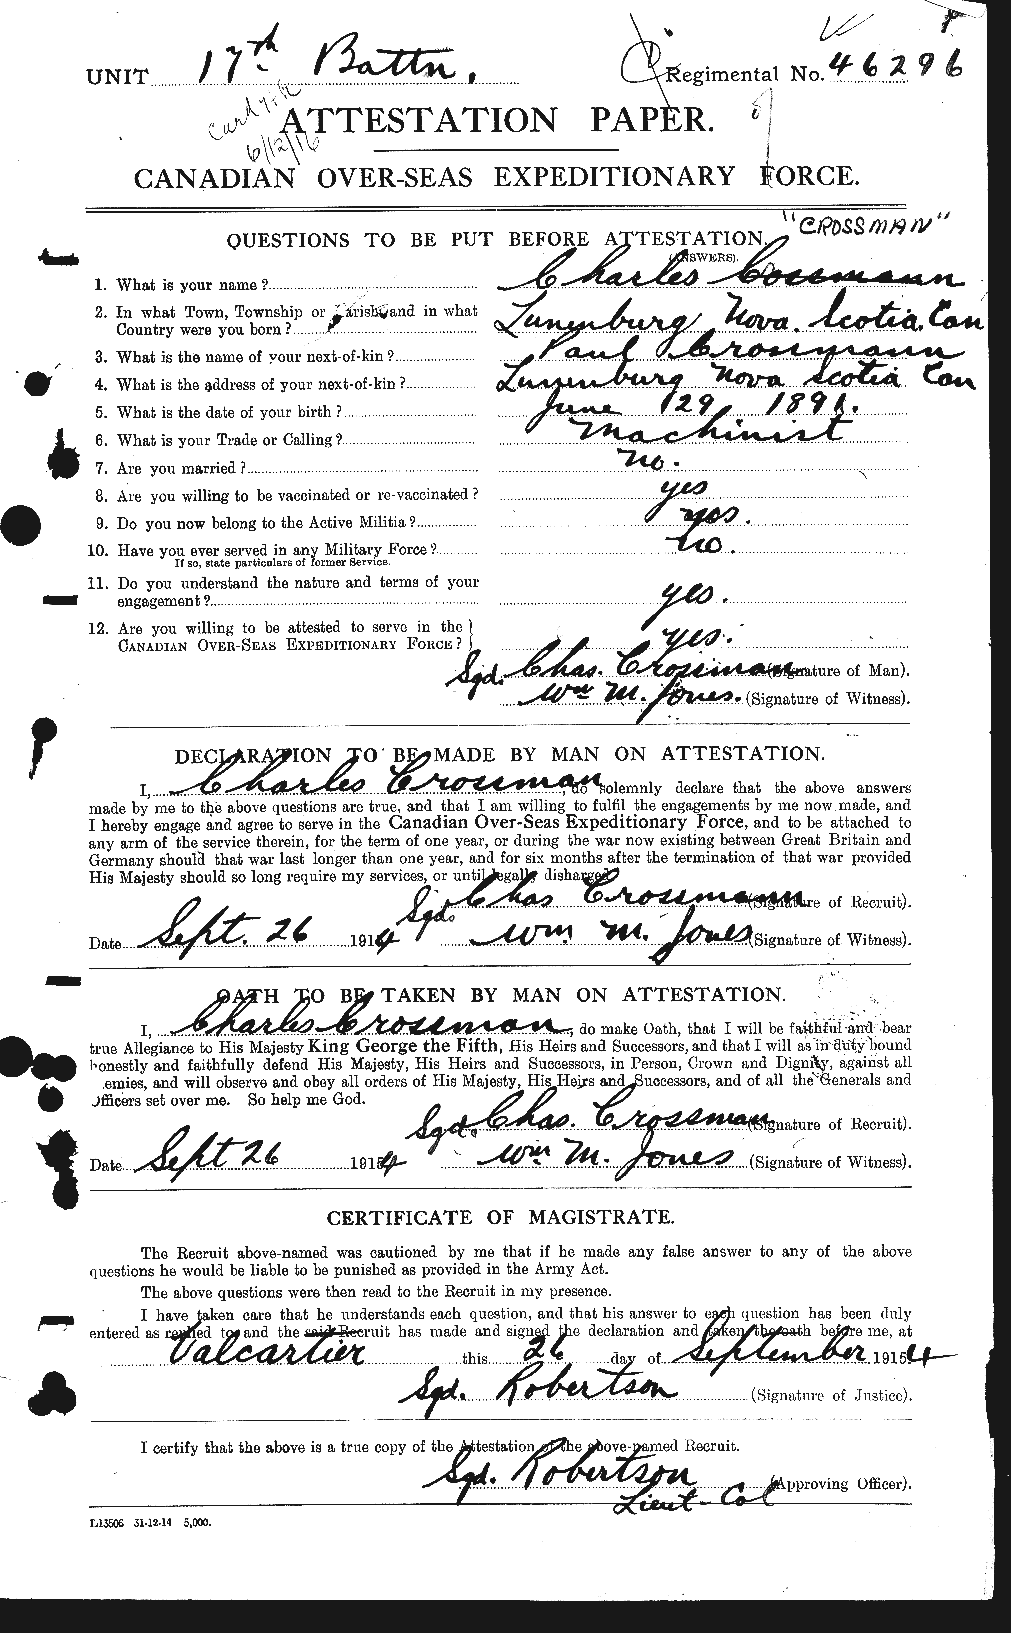 Dossiers du Personnel de la Première Guerre mondiale - CEC 066535a